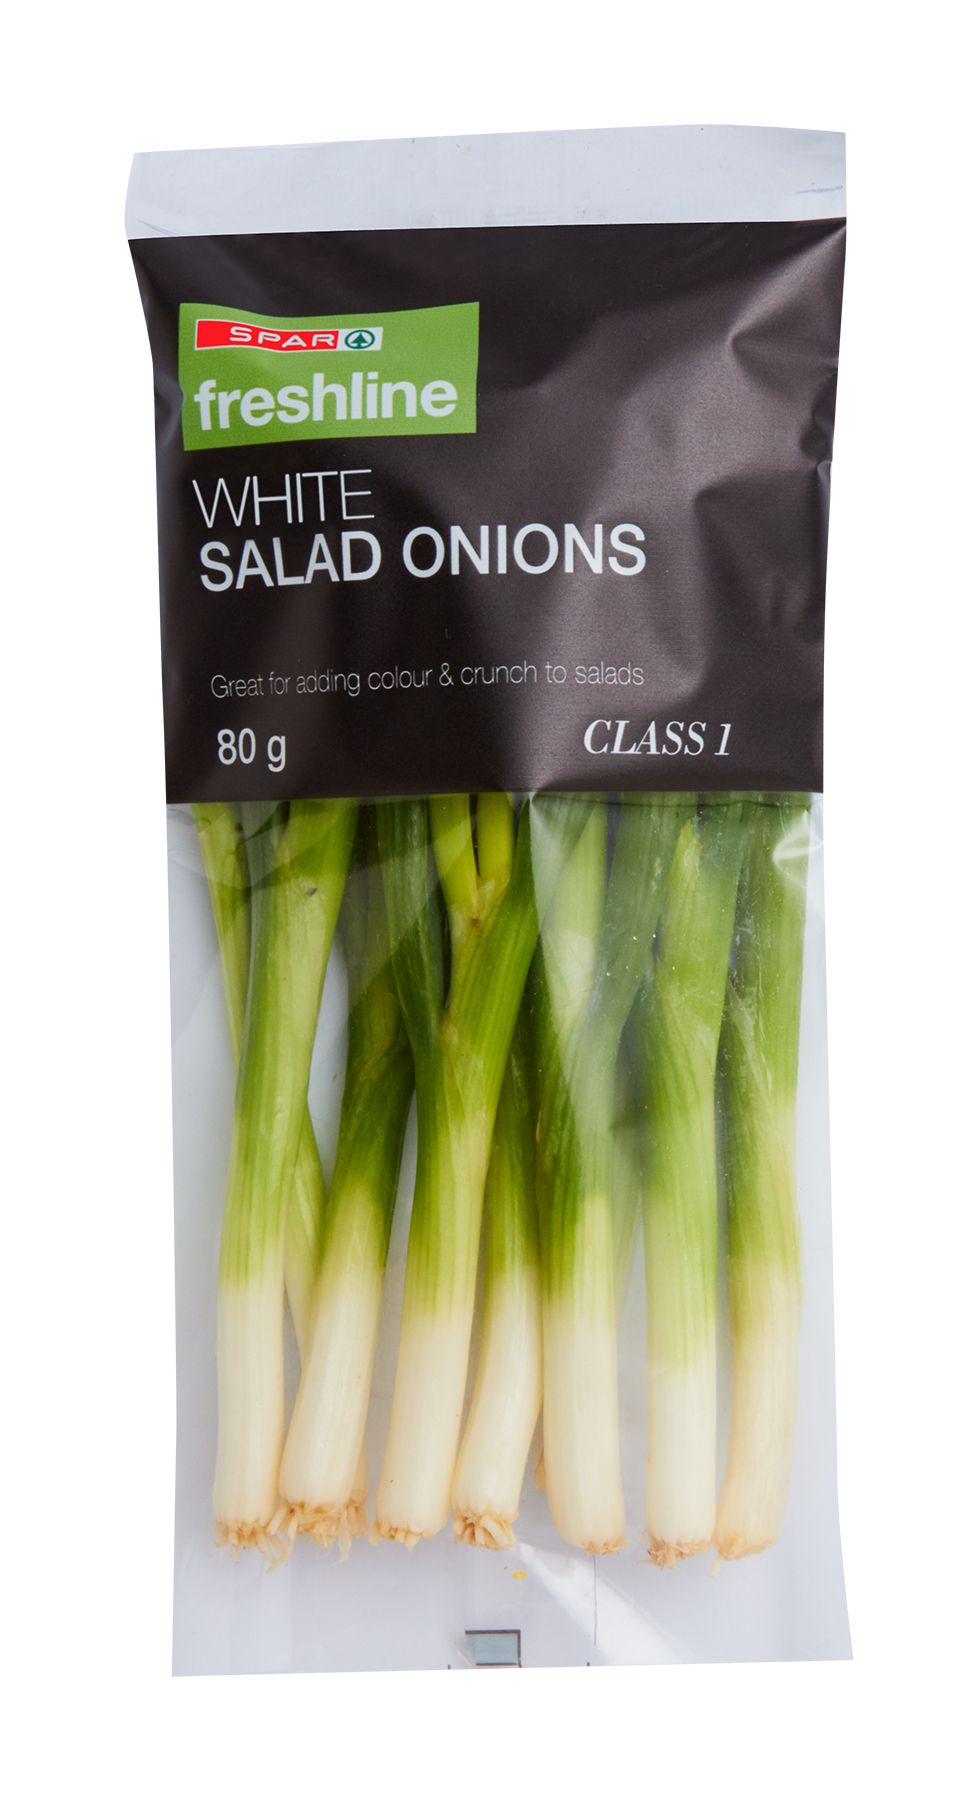 freshline white salad onions 